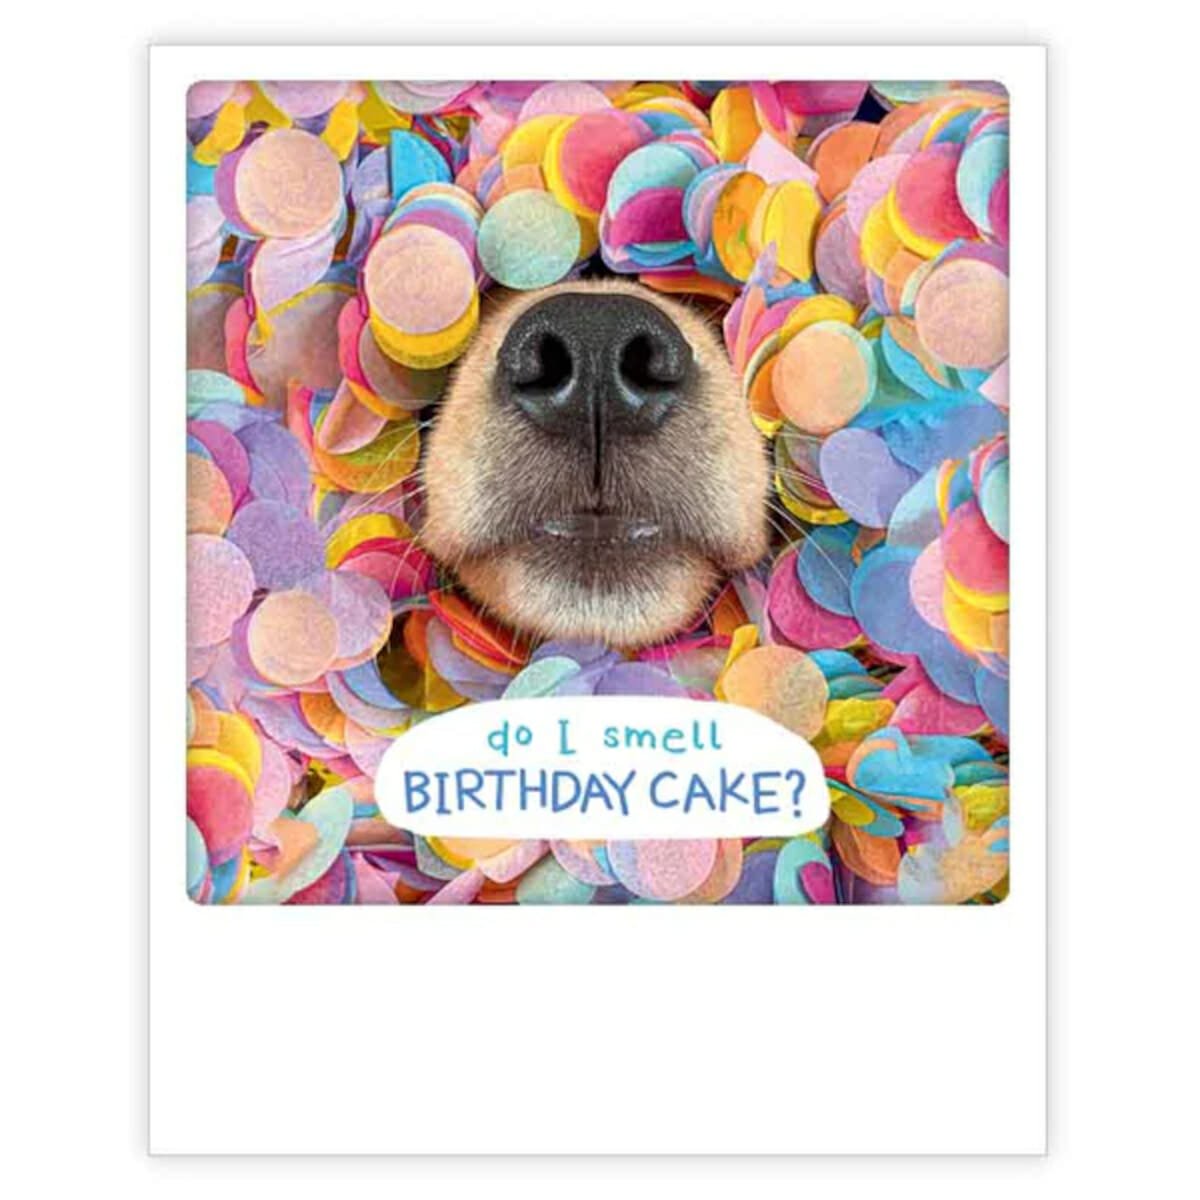 PICKMOTION postikortti, Do I Smell Birthday Cake